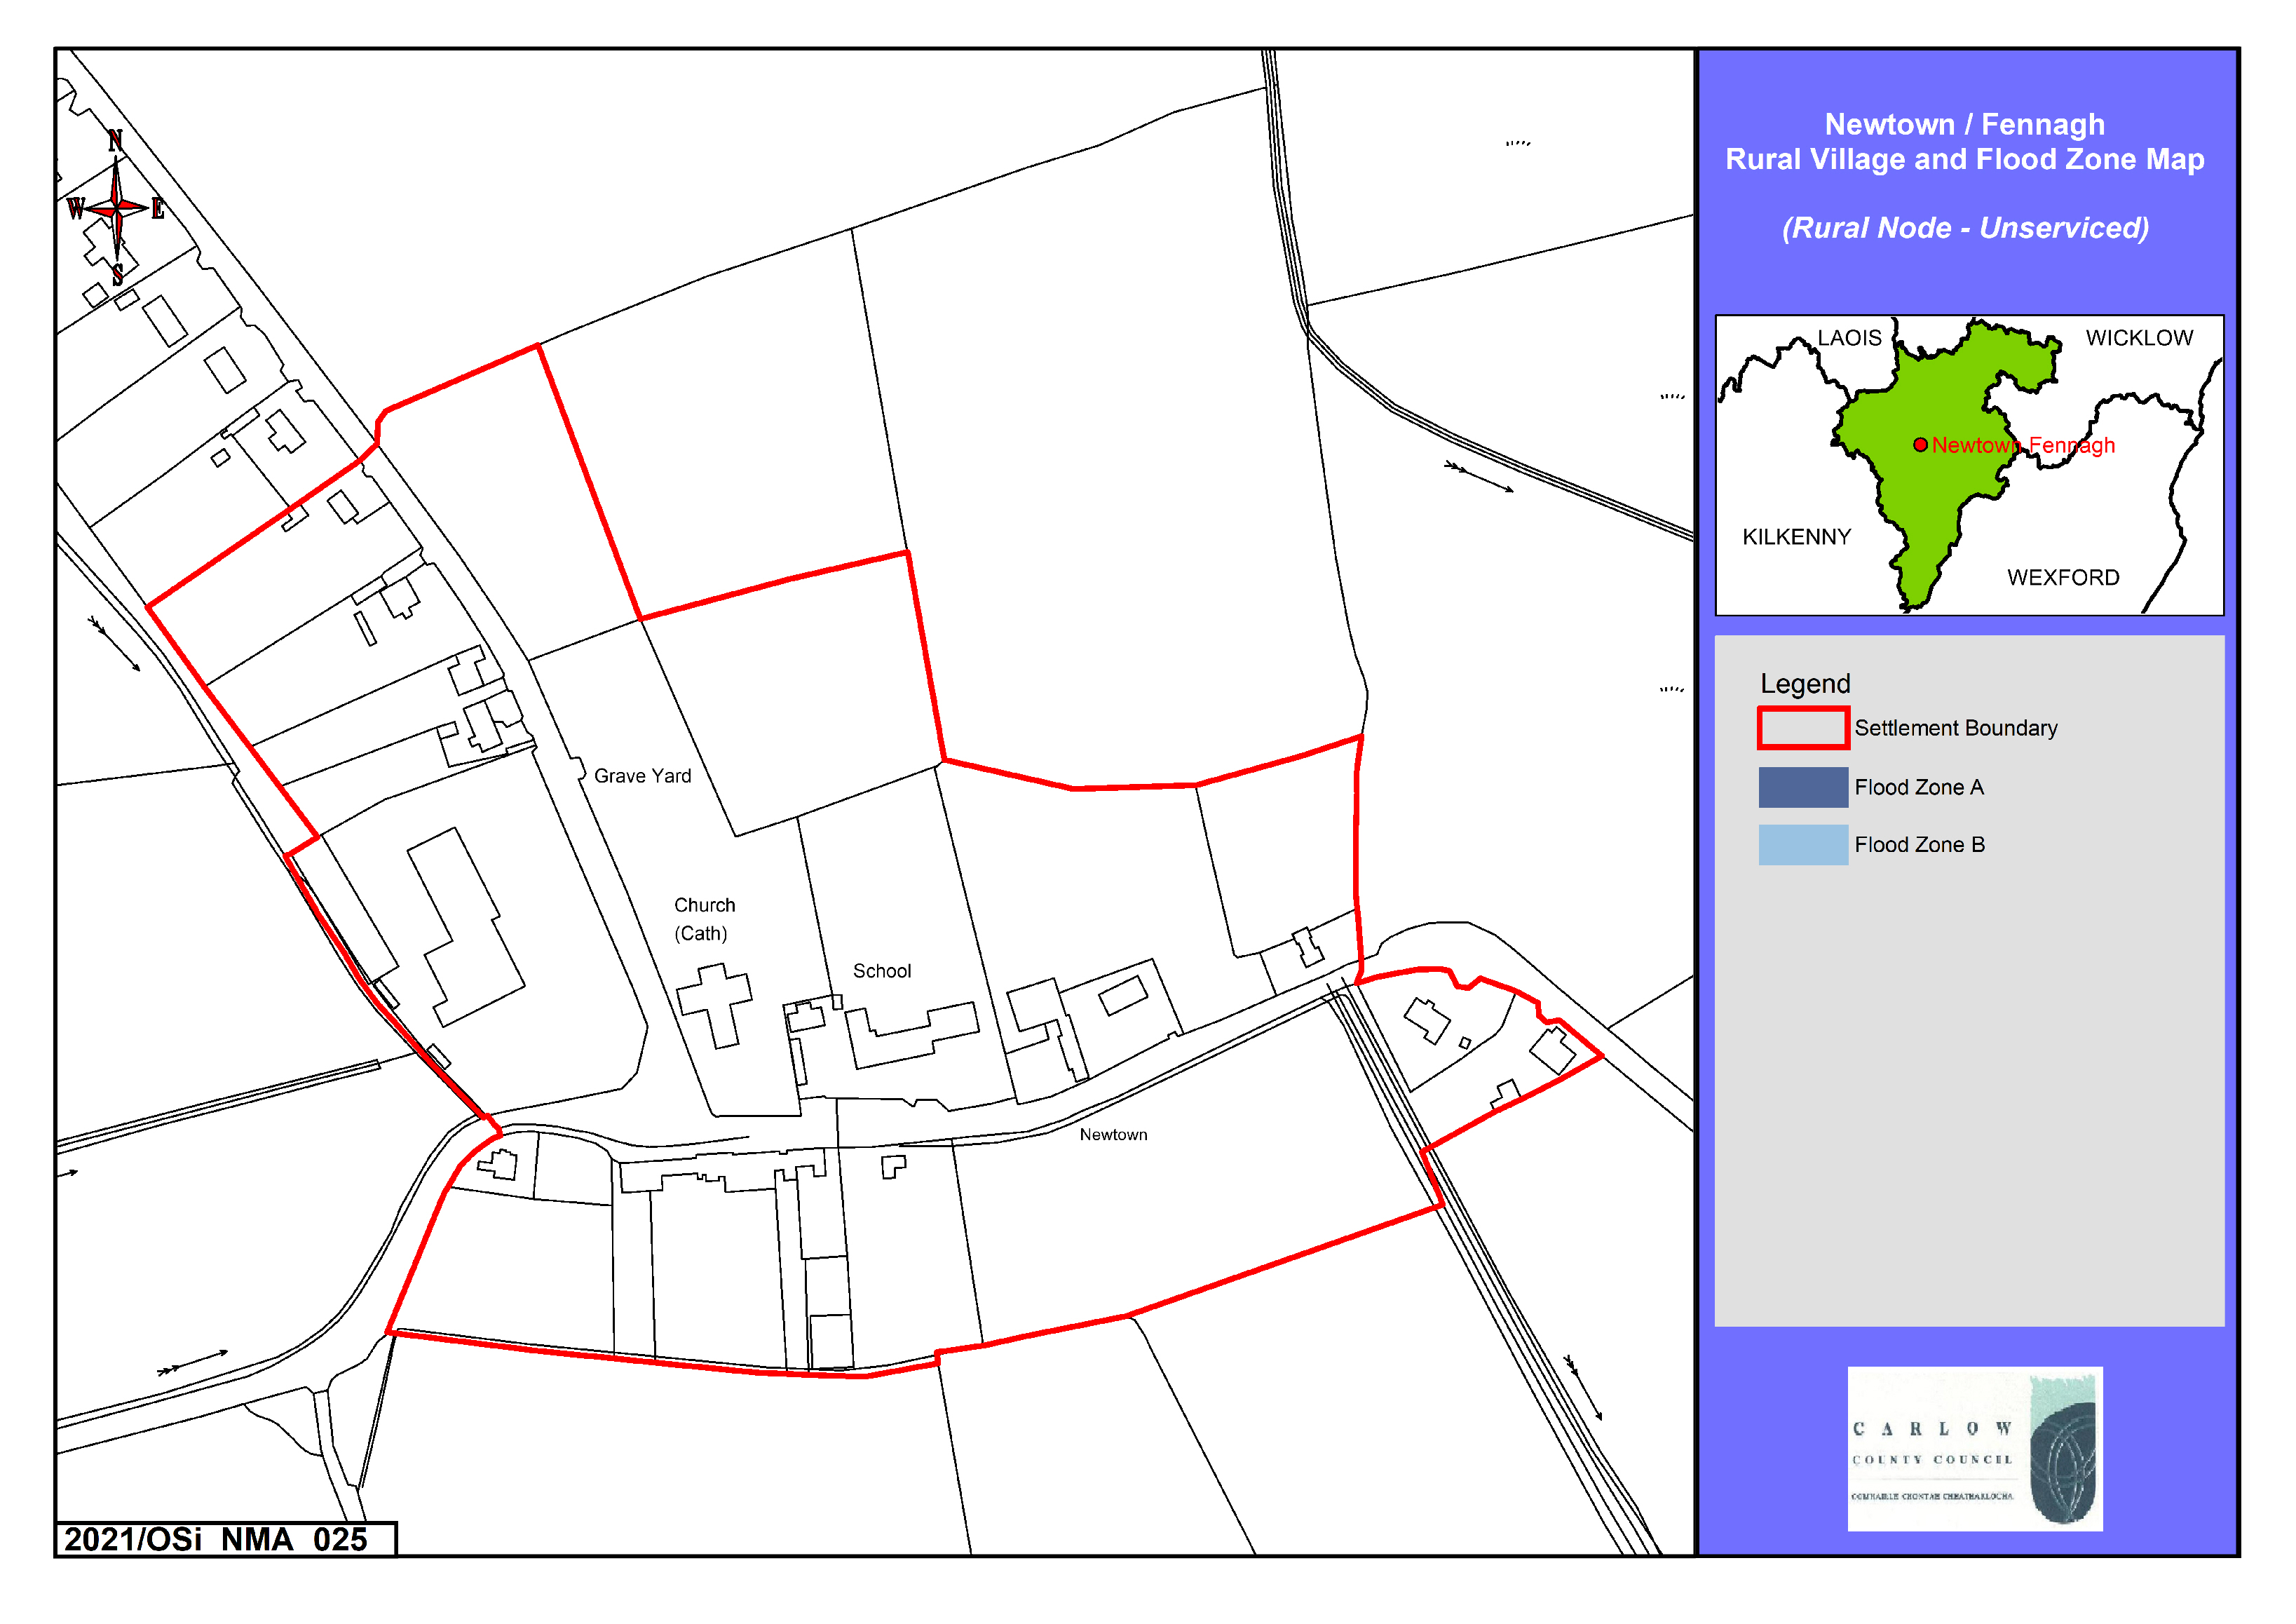 Newtown / Fennagh Rural Village and Flood Zone Map